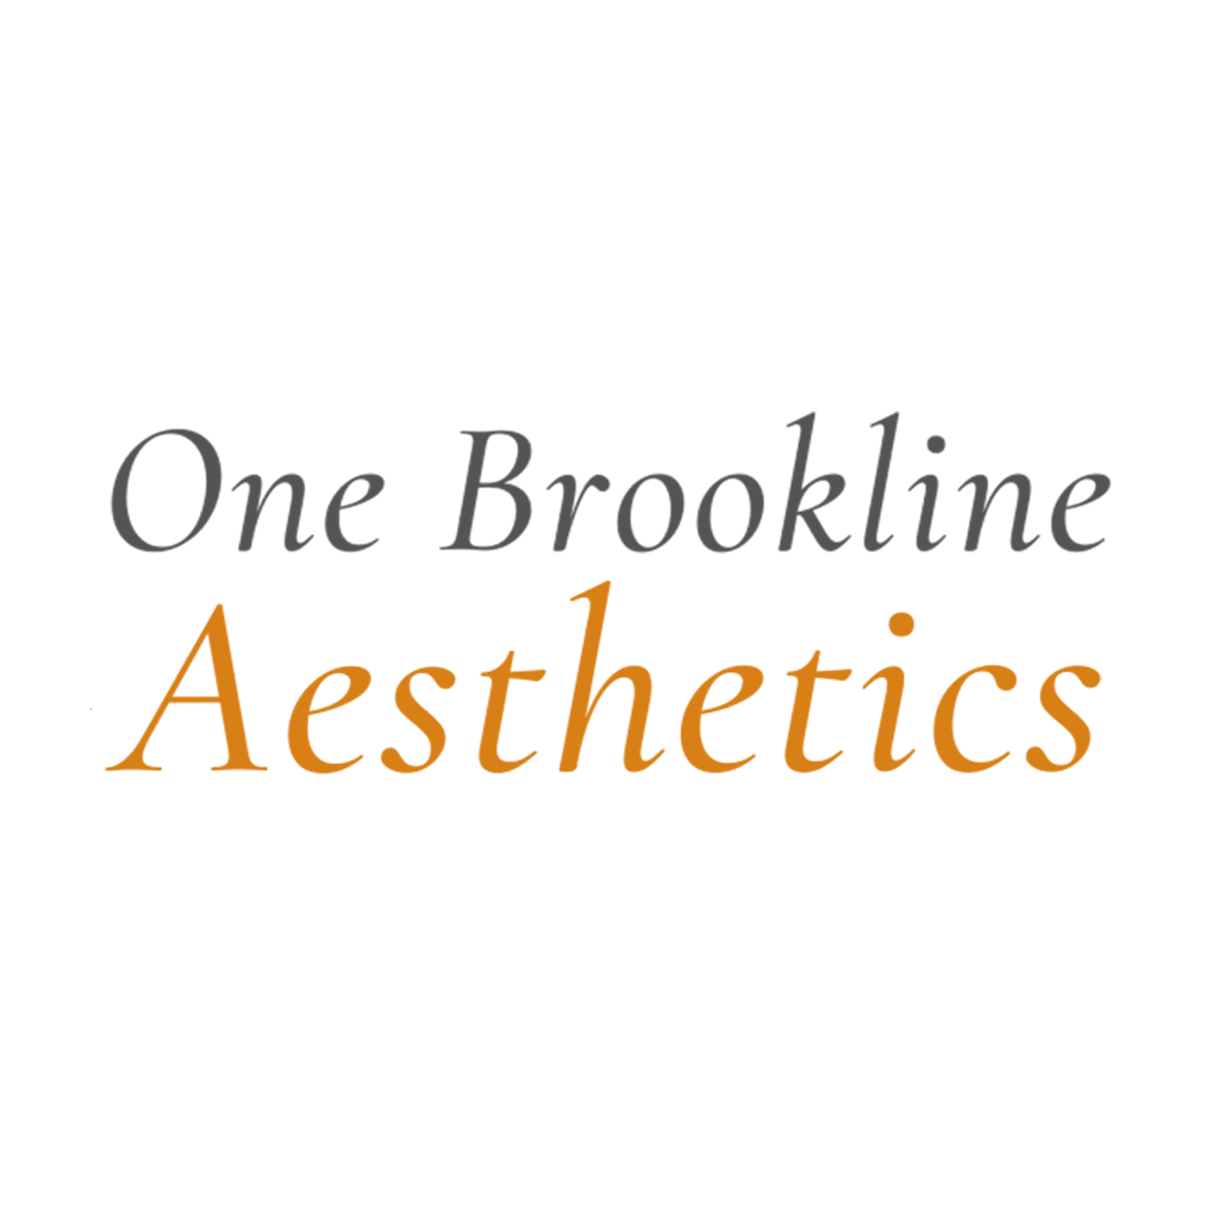 One Brookline Aesthetics